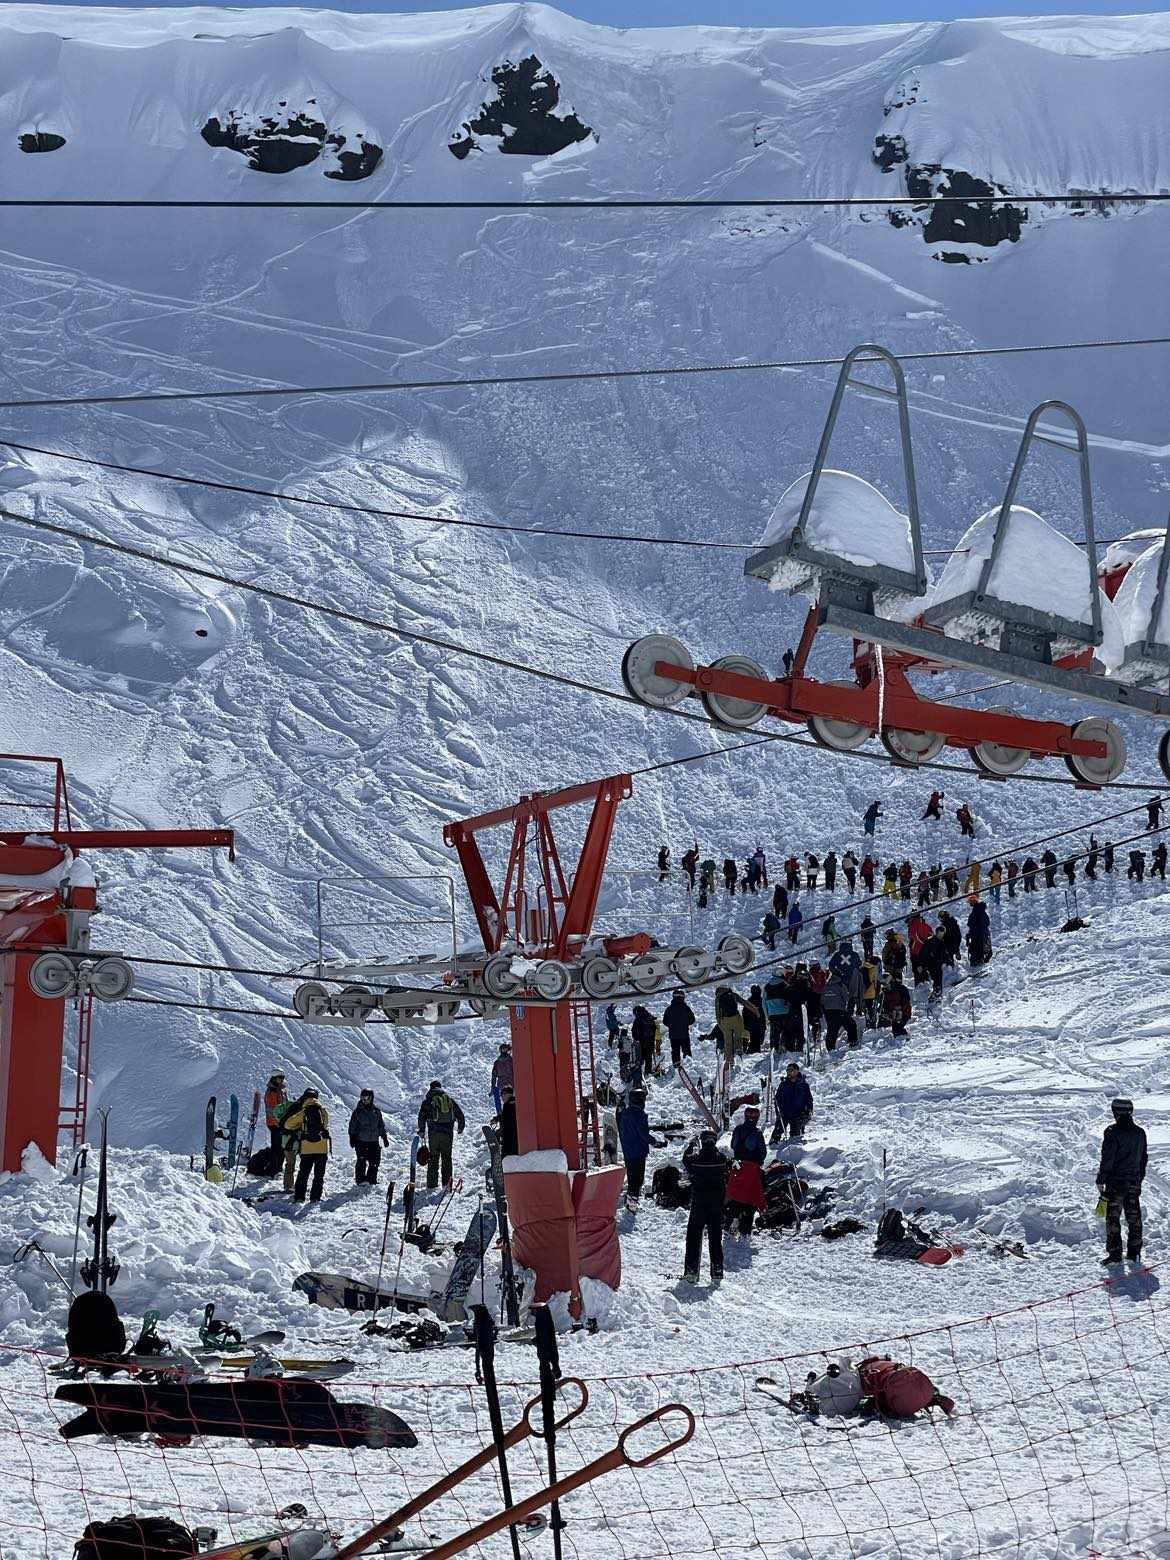 Inesperada avalancha ocurrió en el centro de esquí de Chile al lado del telesilla